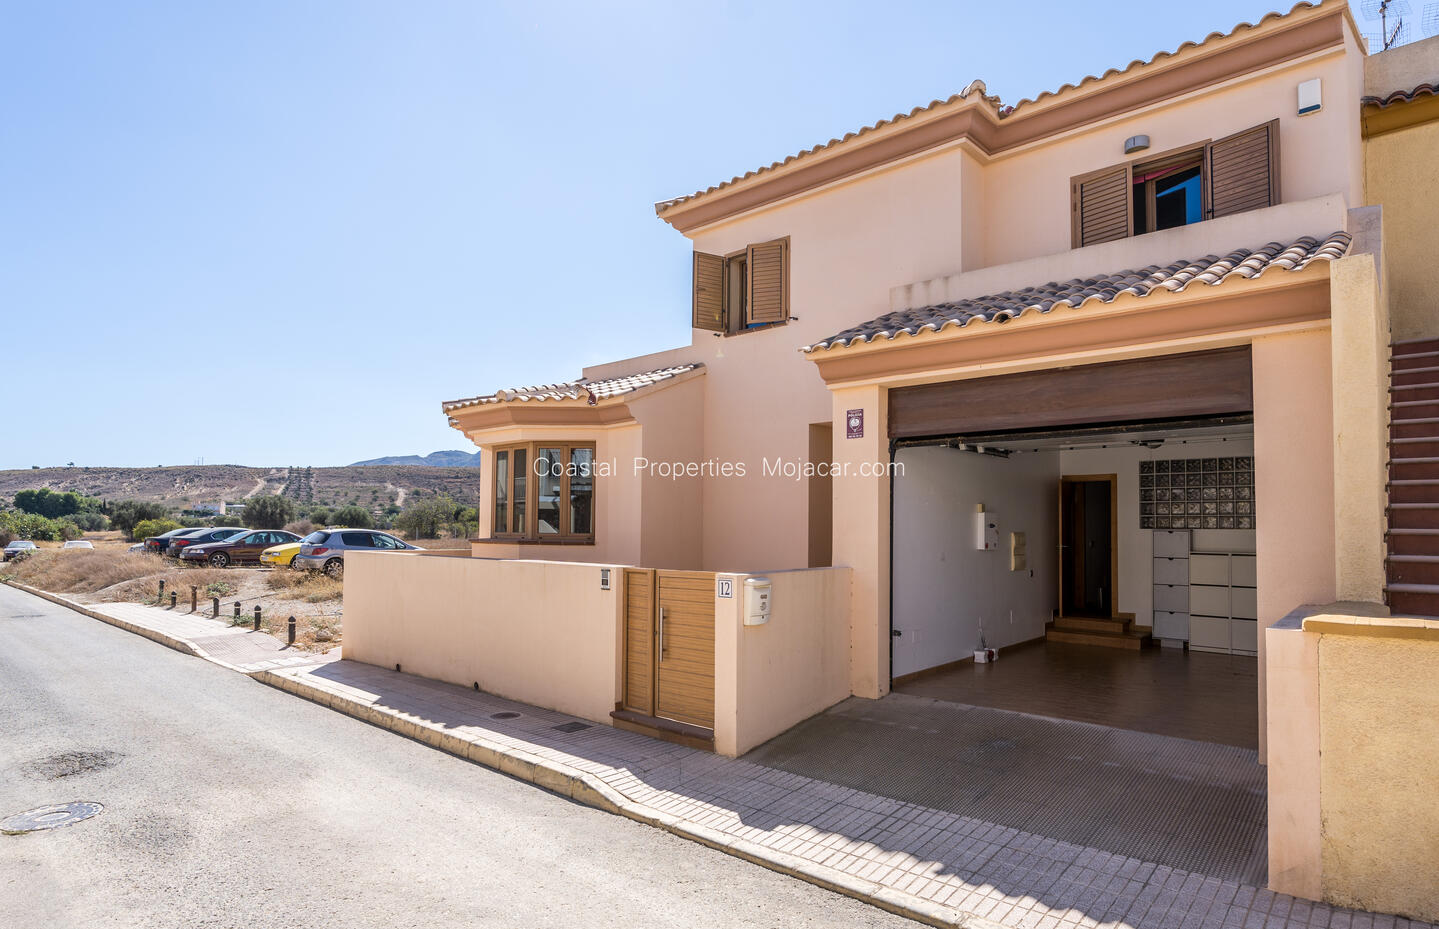 CPM 002 - VILLA MAR: Townhouse for Sale in Turre, Almería